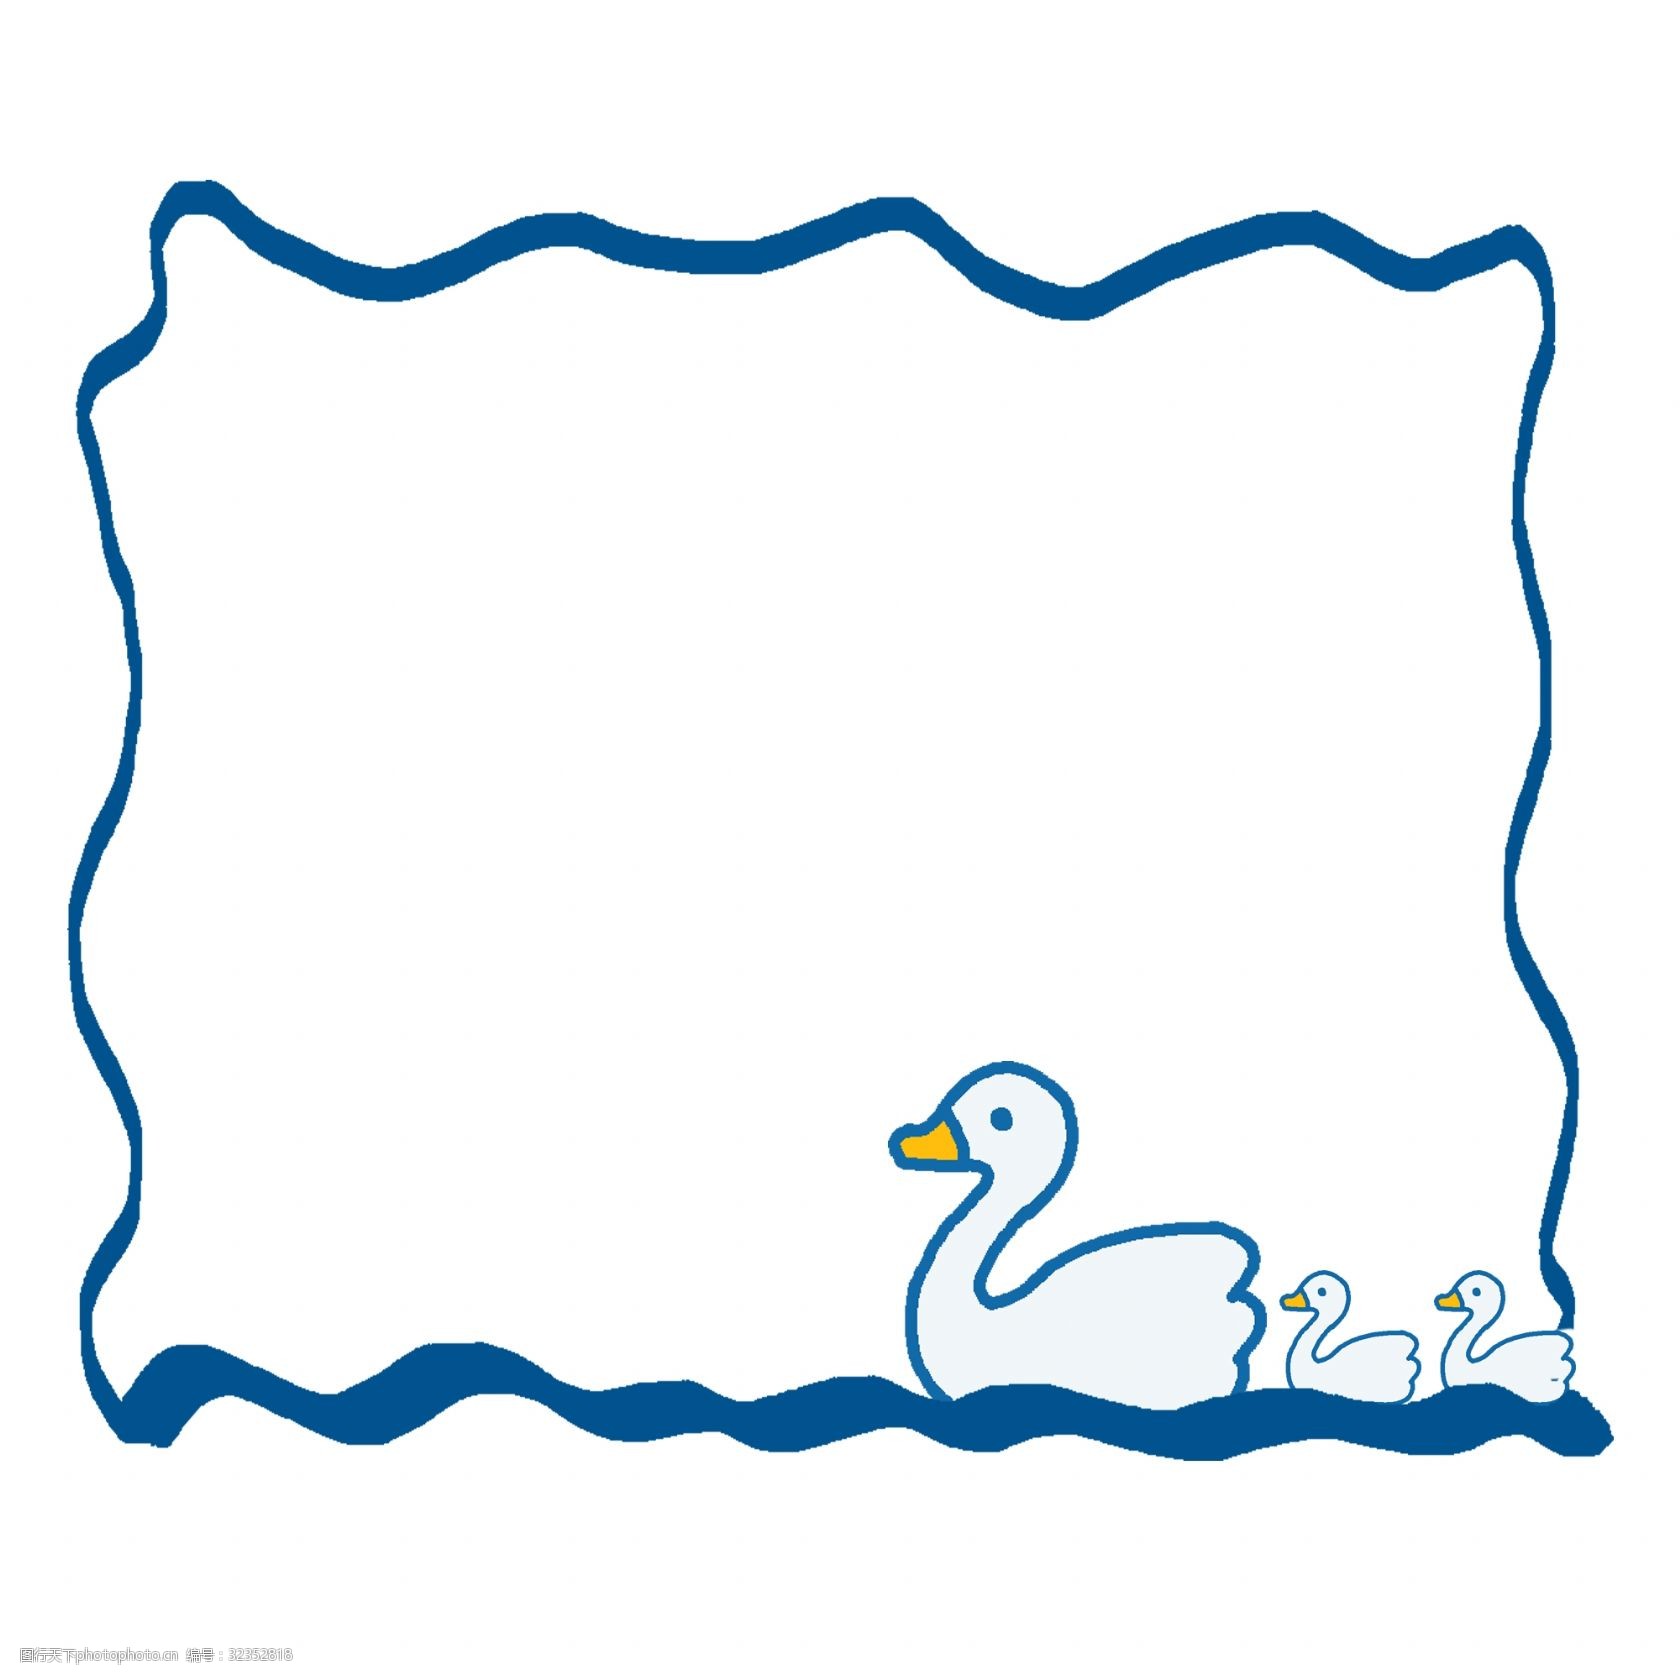 戏水的天鹅 漂亮的天鹅 卡通边框 手绘边框 纹理边框 图框 画框 蓝色